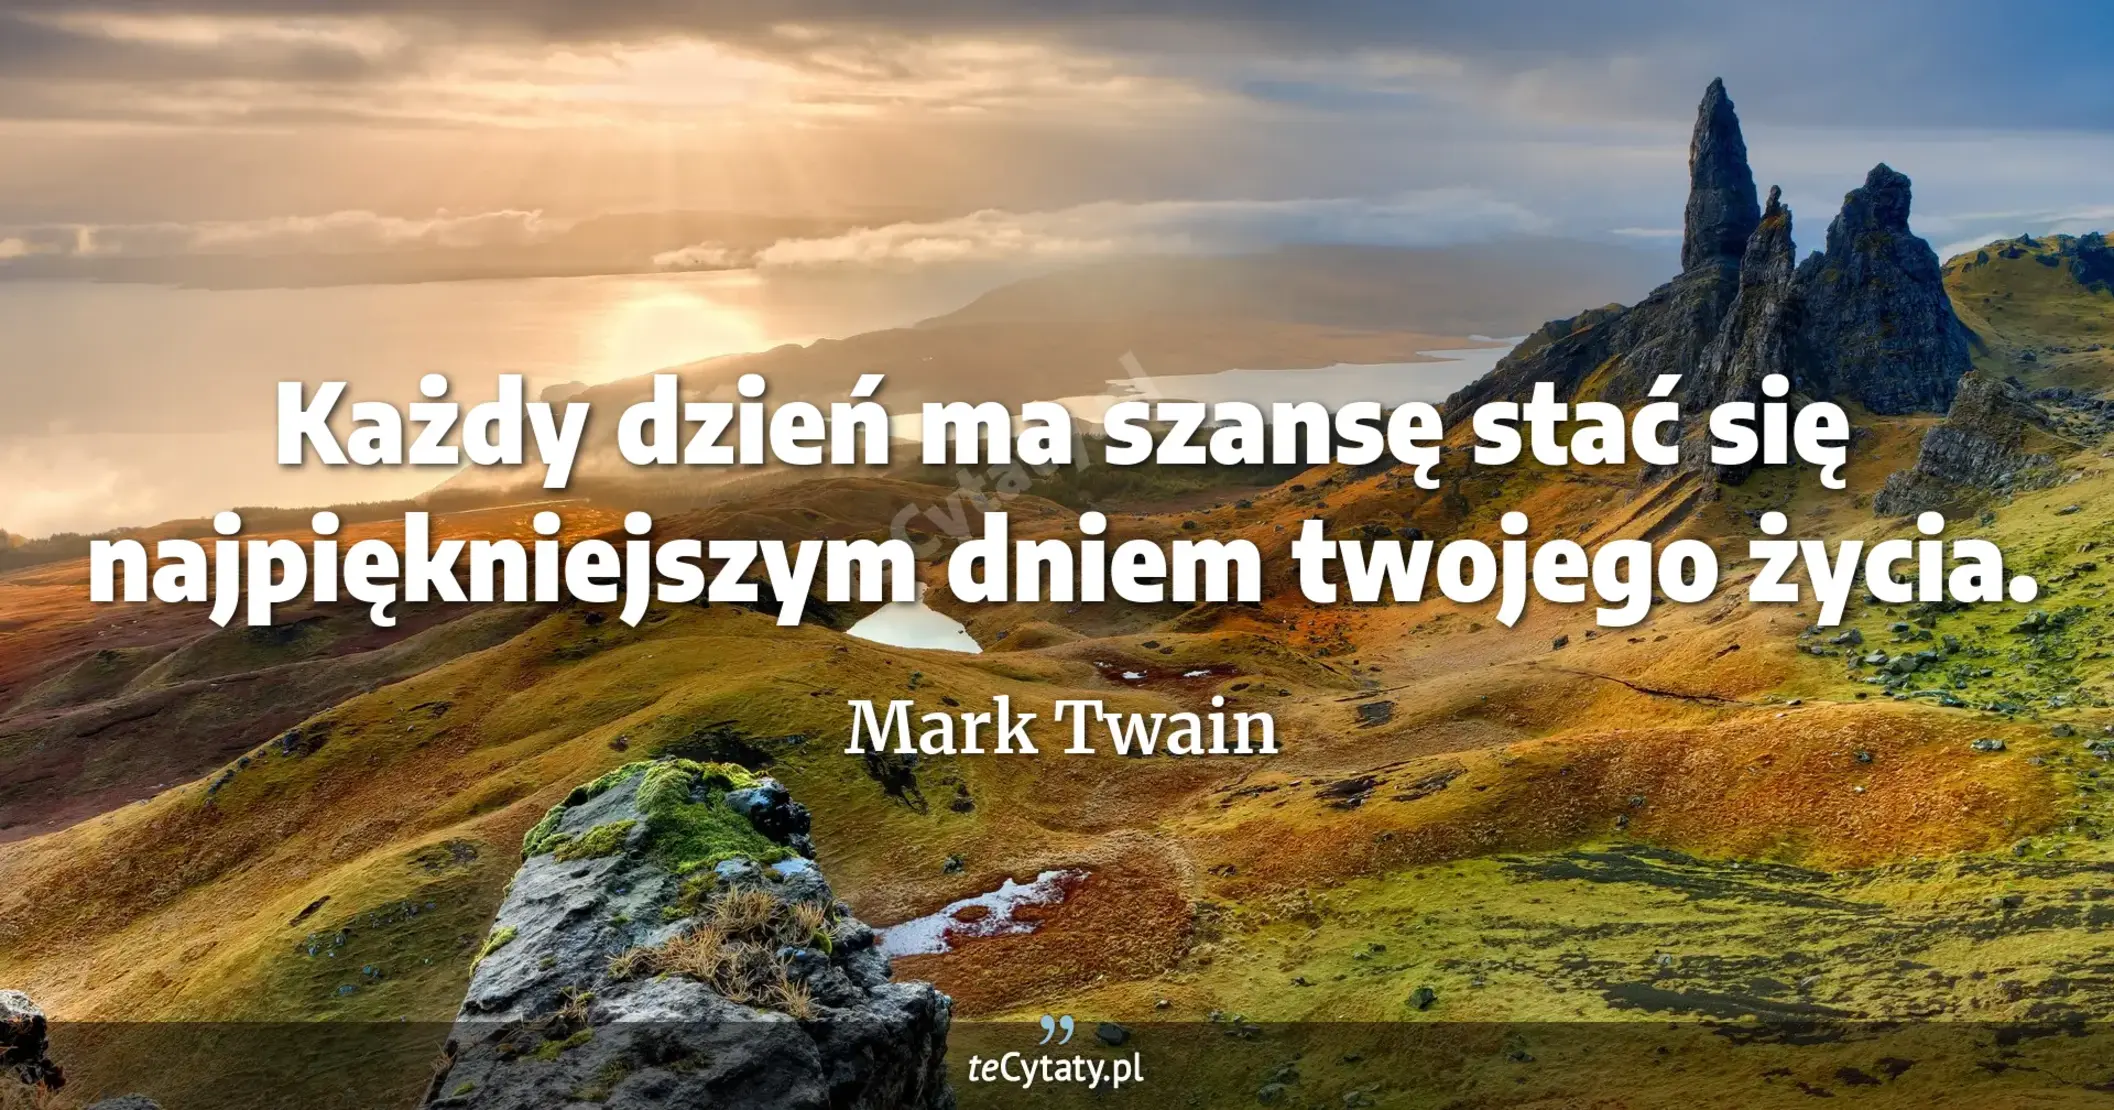 Każdy dzień ma szansę stać się najpiękniejszym dniem twojego życia. - Mark Twain